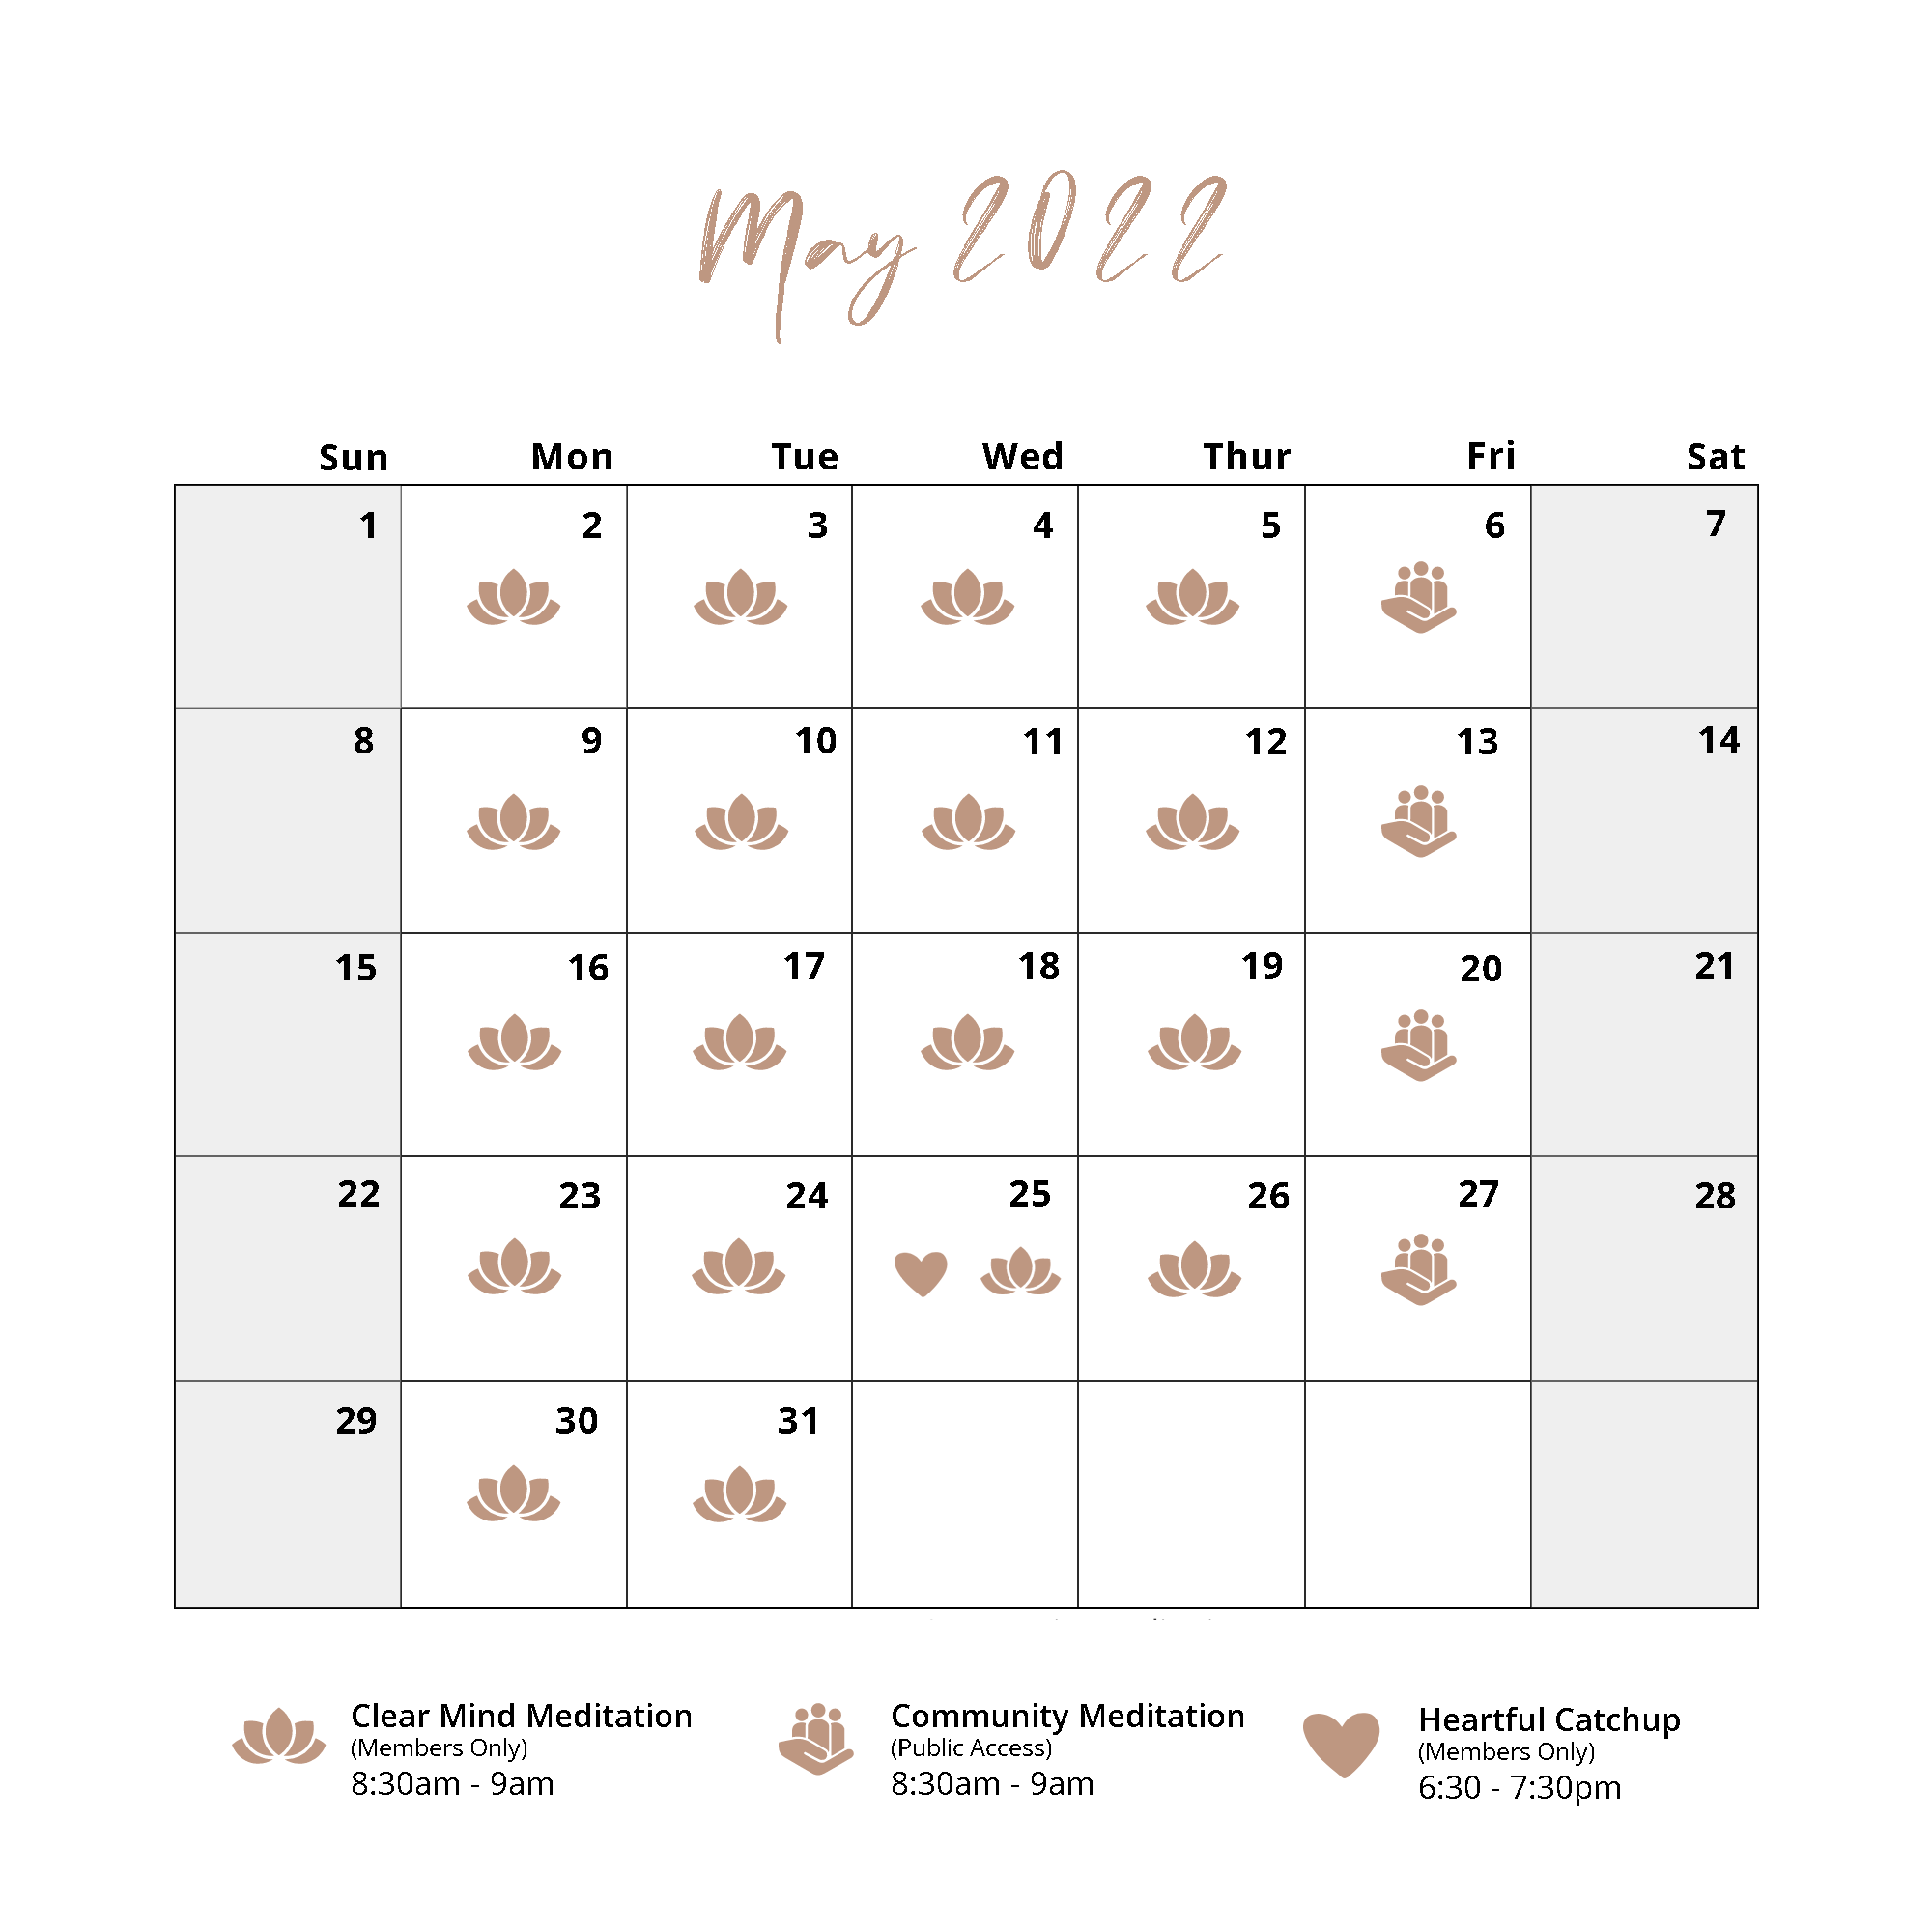 May Calendar 2022